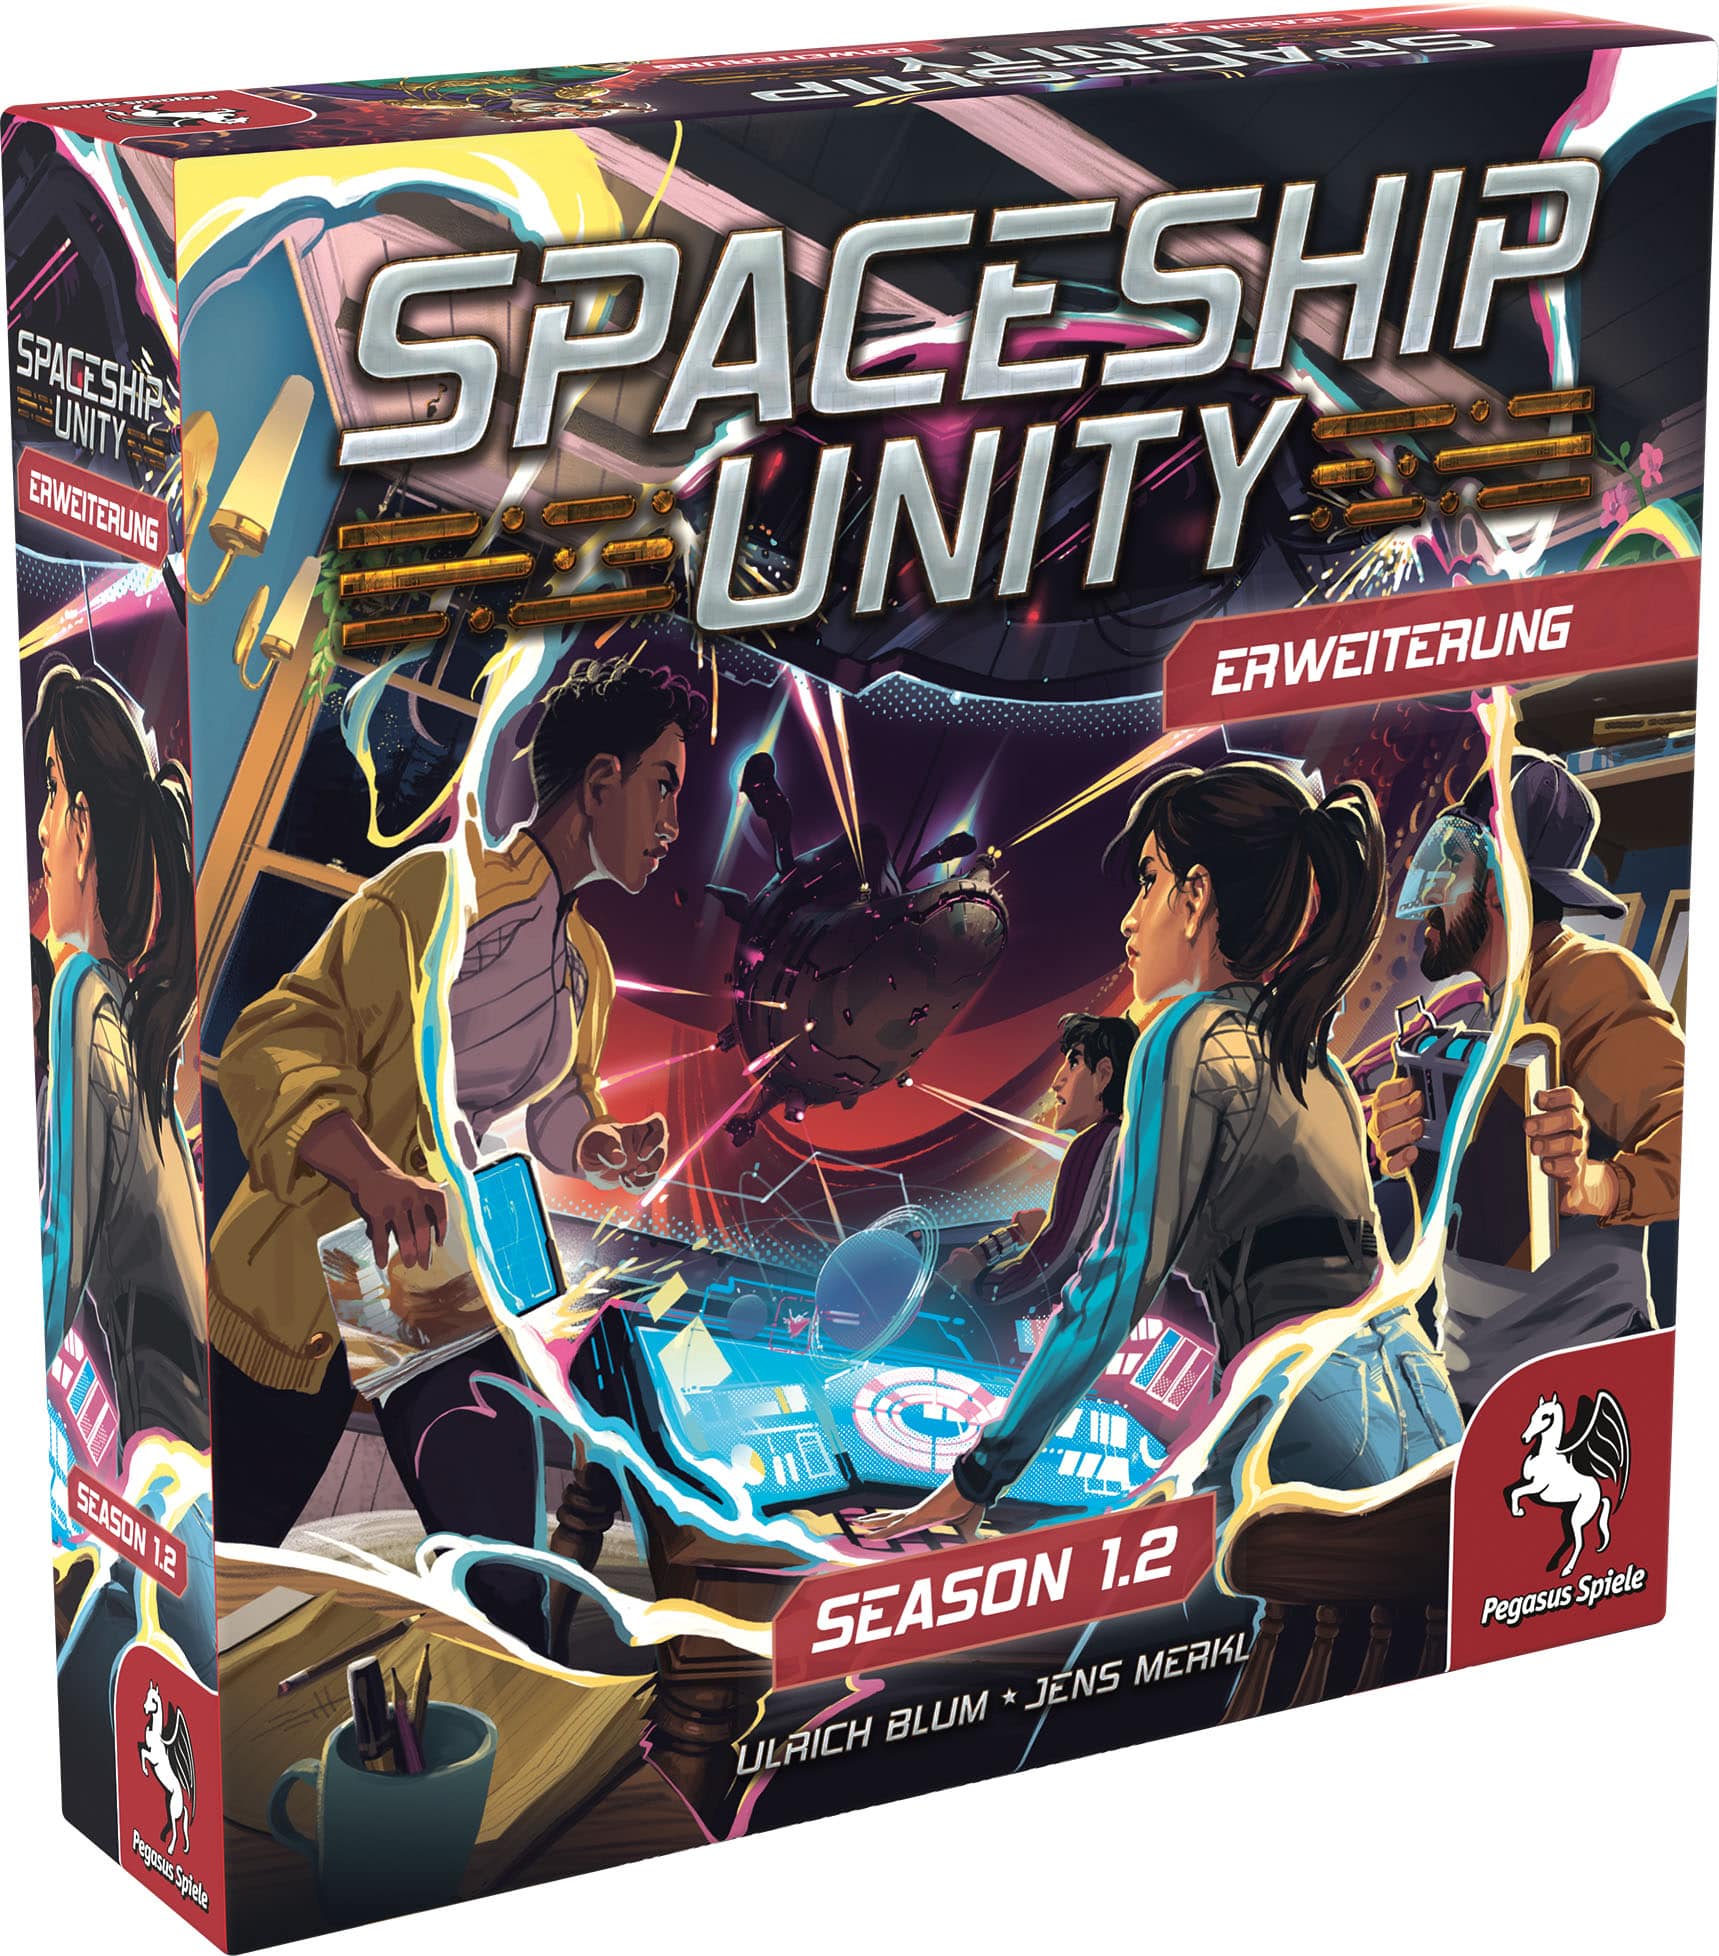 Spaceship Unity - Season 1.2 Erweiterung